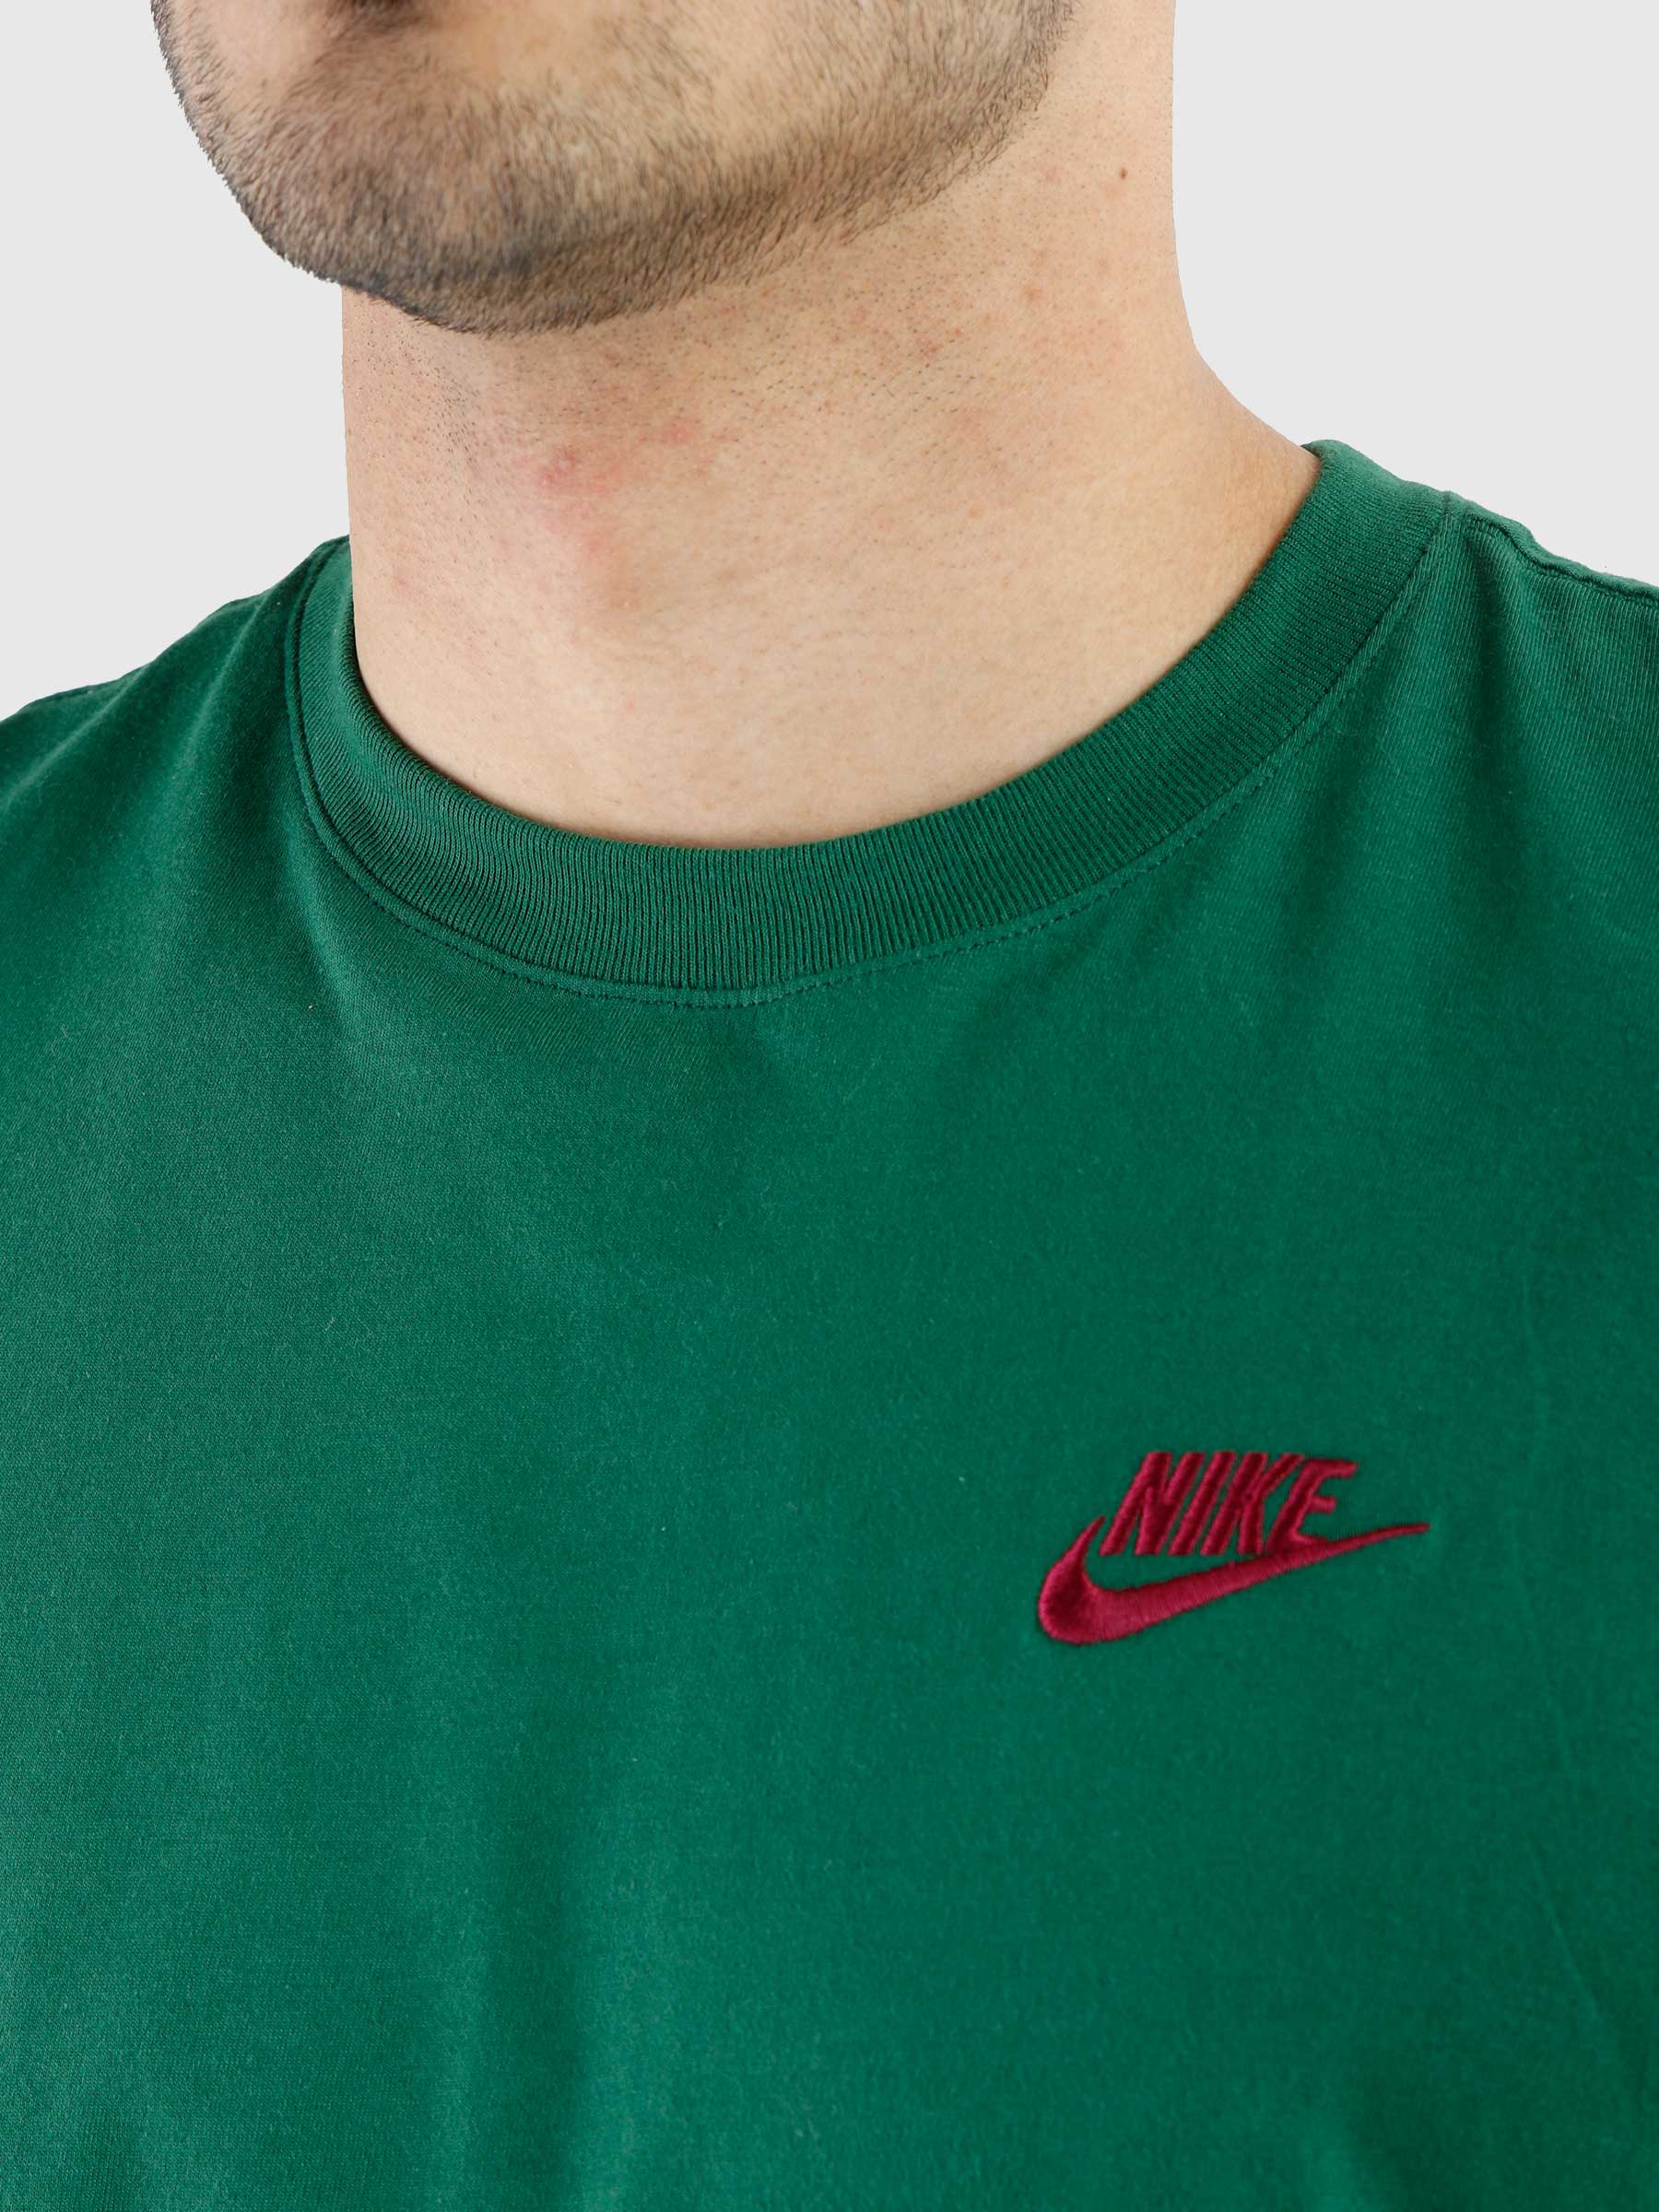 Nike Sportswear Club Gorge Green AR4997-341 | Freshcotton